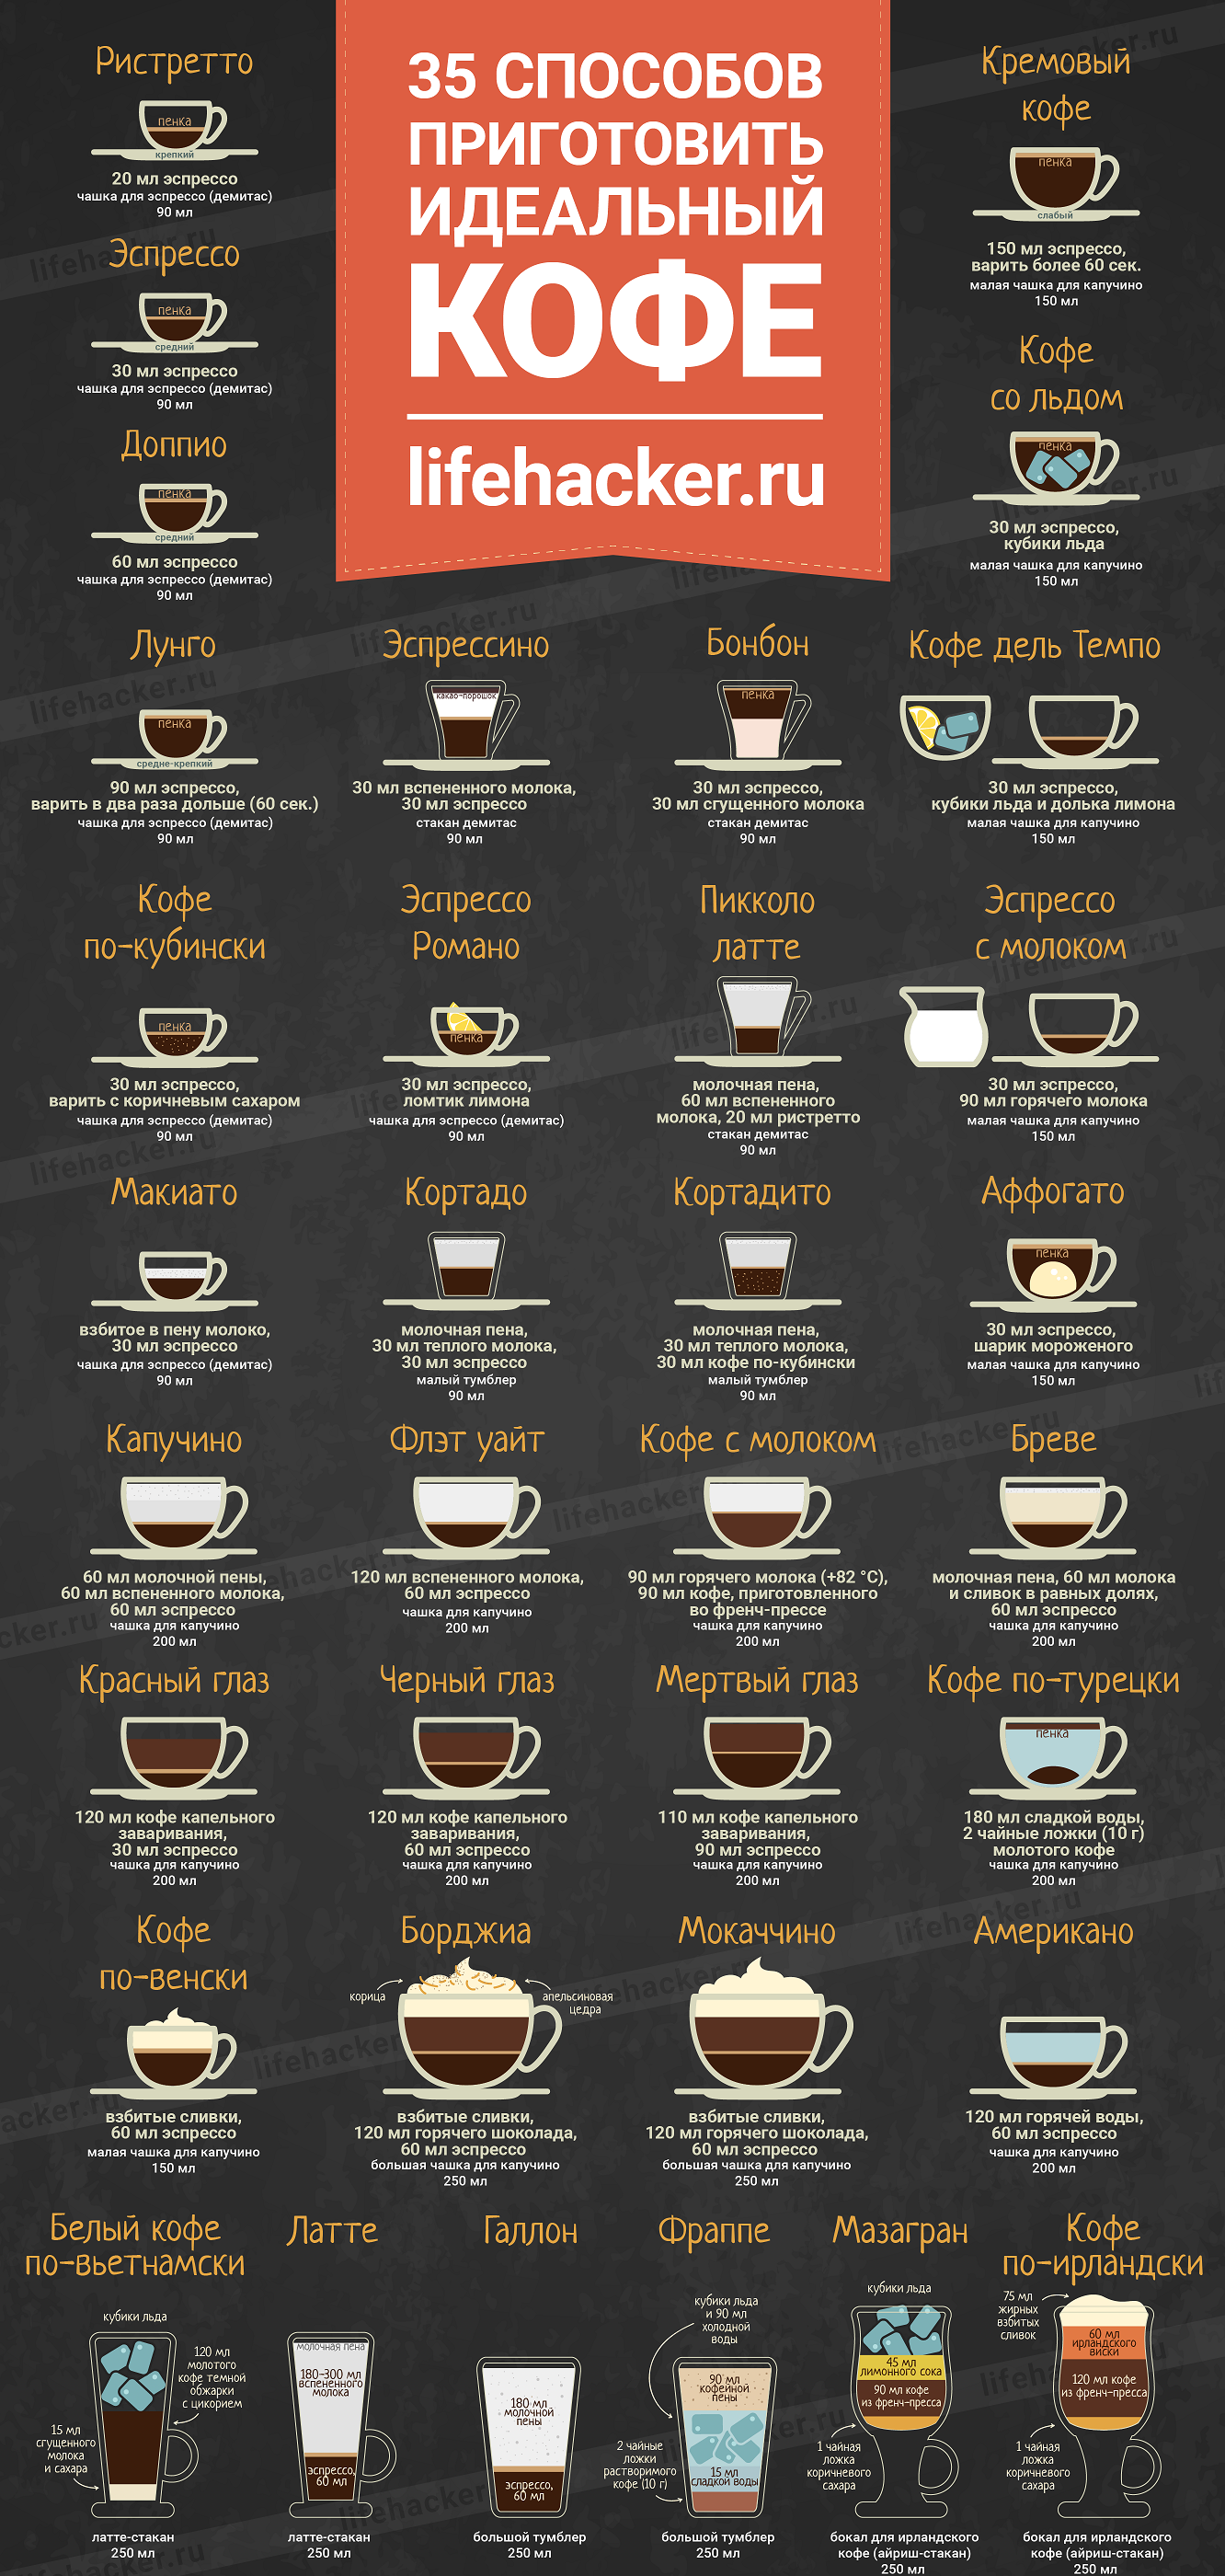 35 способов приготовить кофе